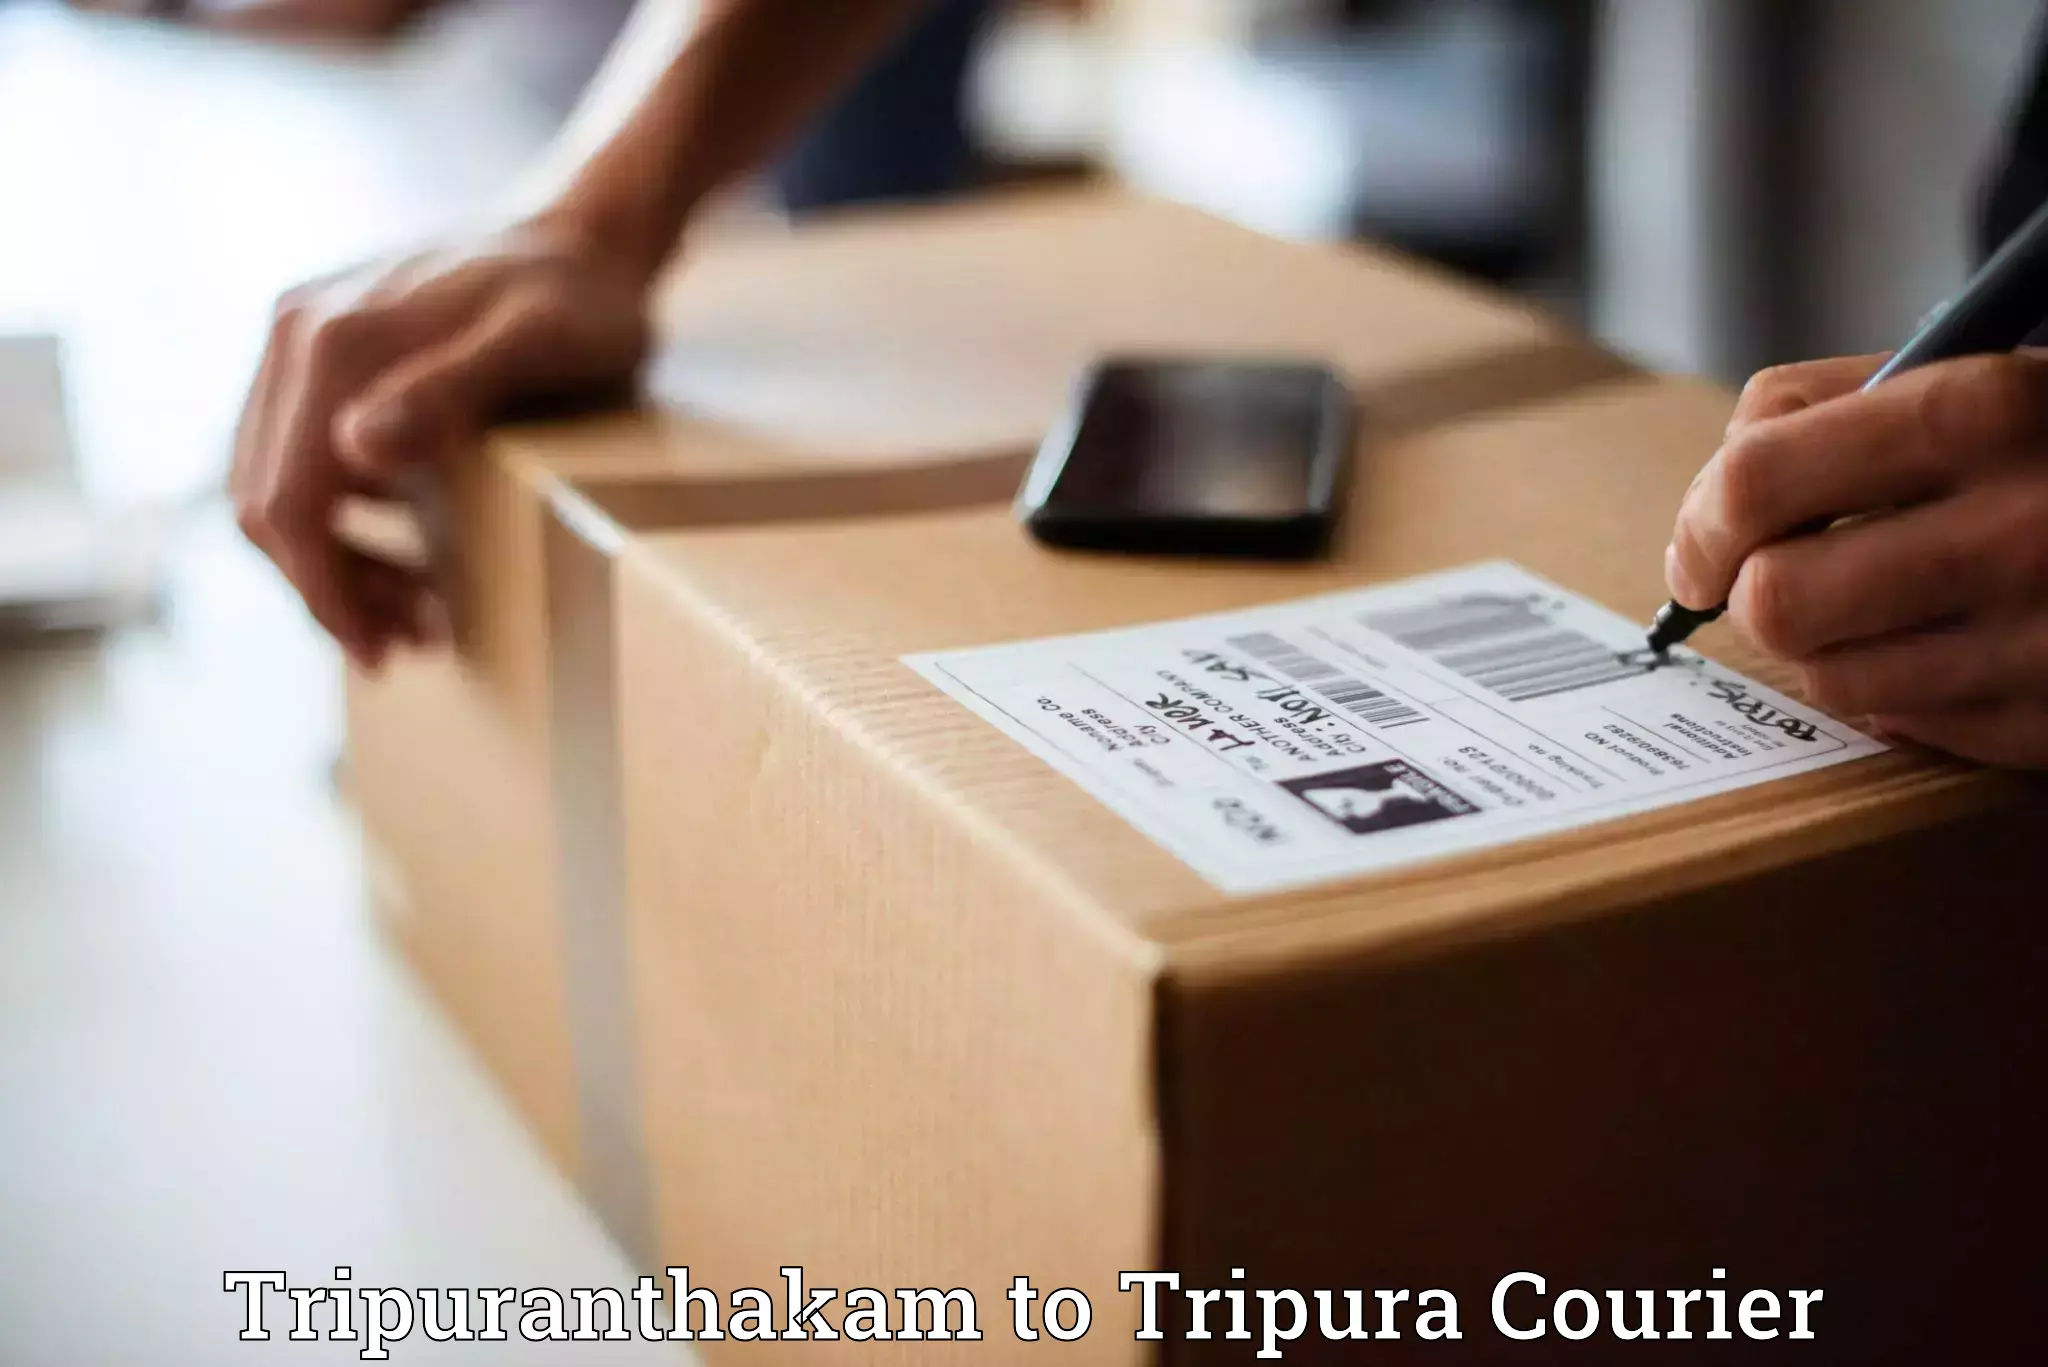 Global parcel delivery Tripuranthakam to Manu Bazar